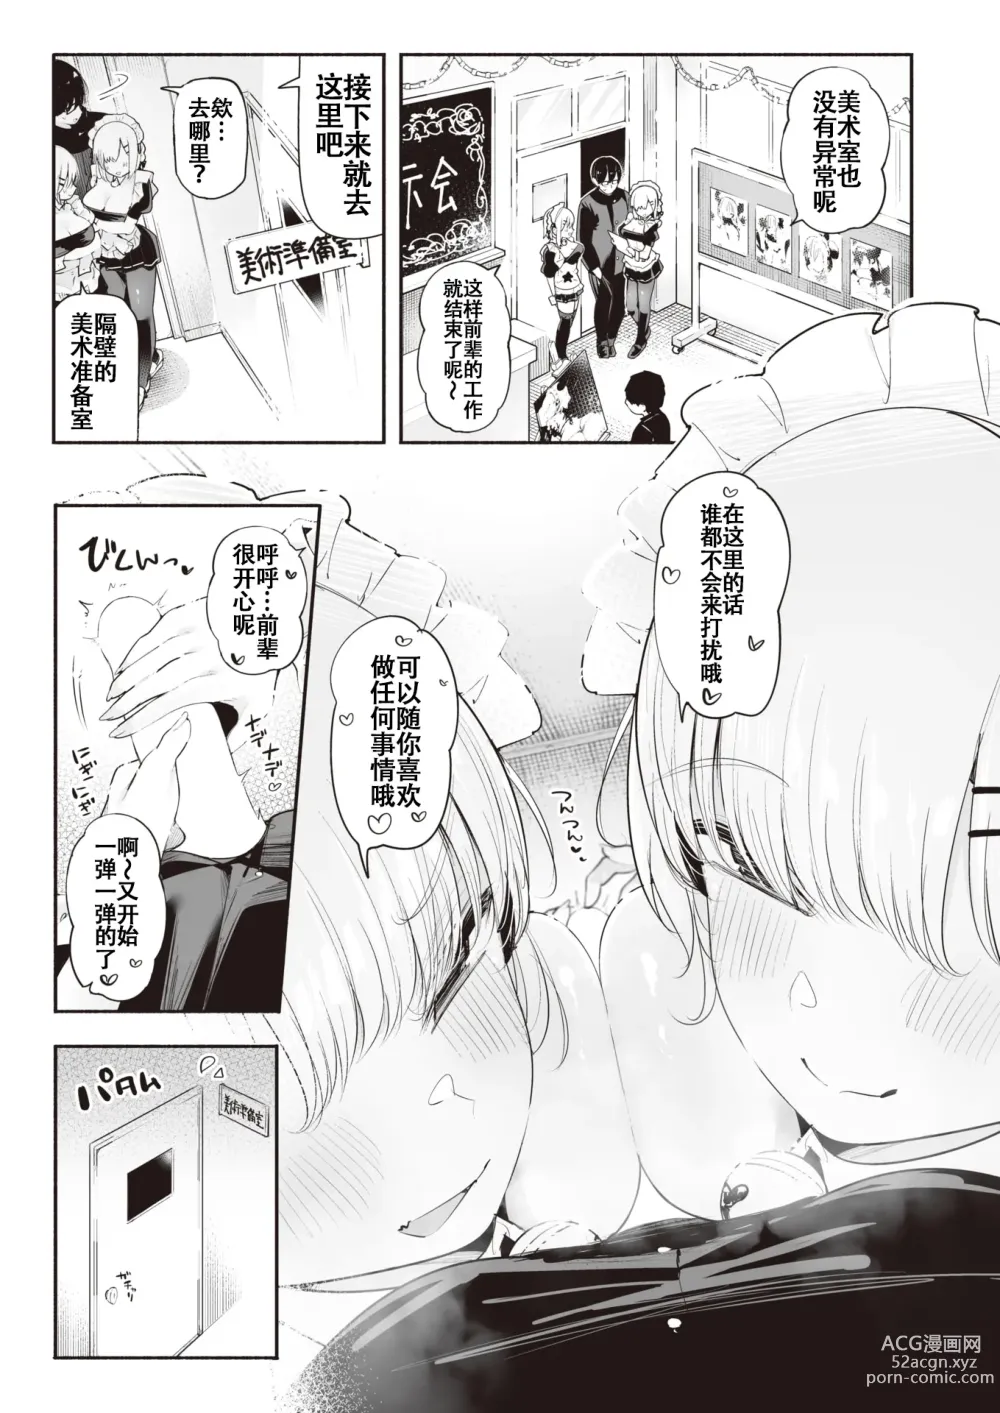 Page 7 of manga 后辈女仆之双胞胎雌小鬼